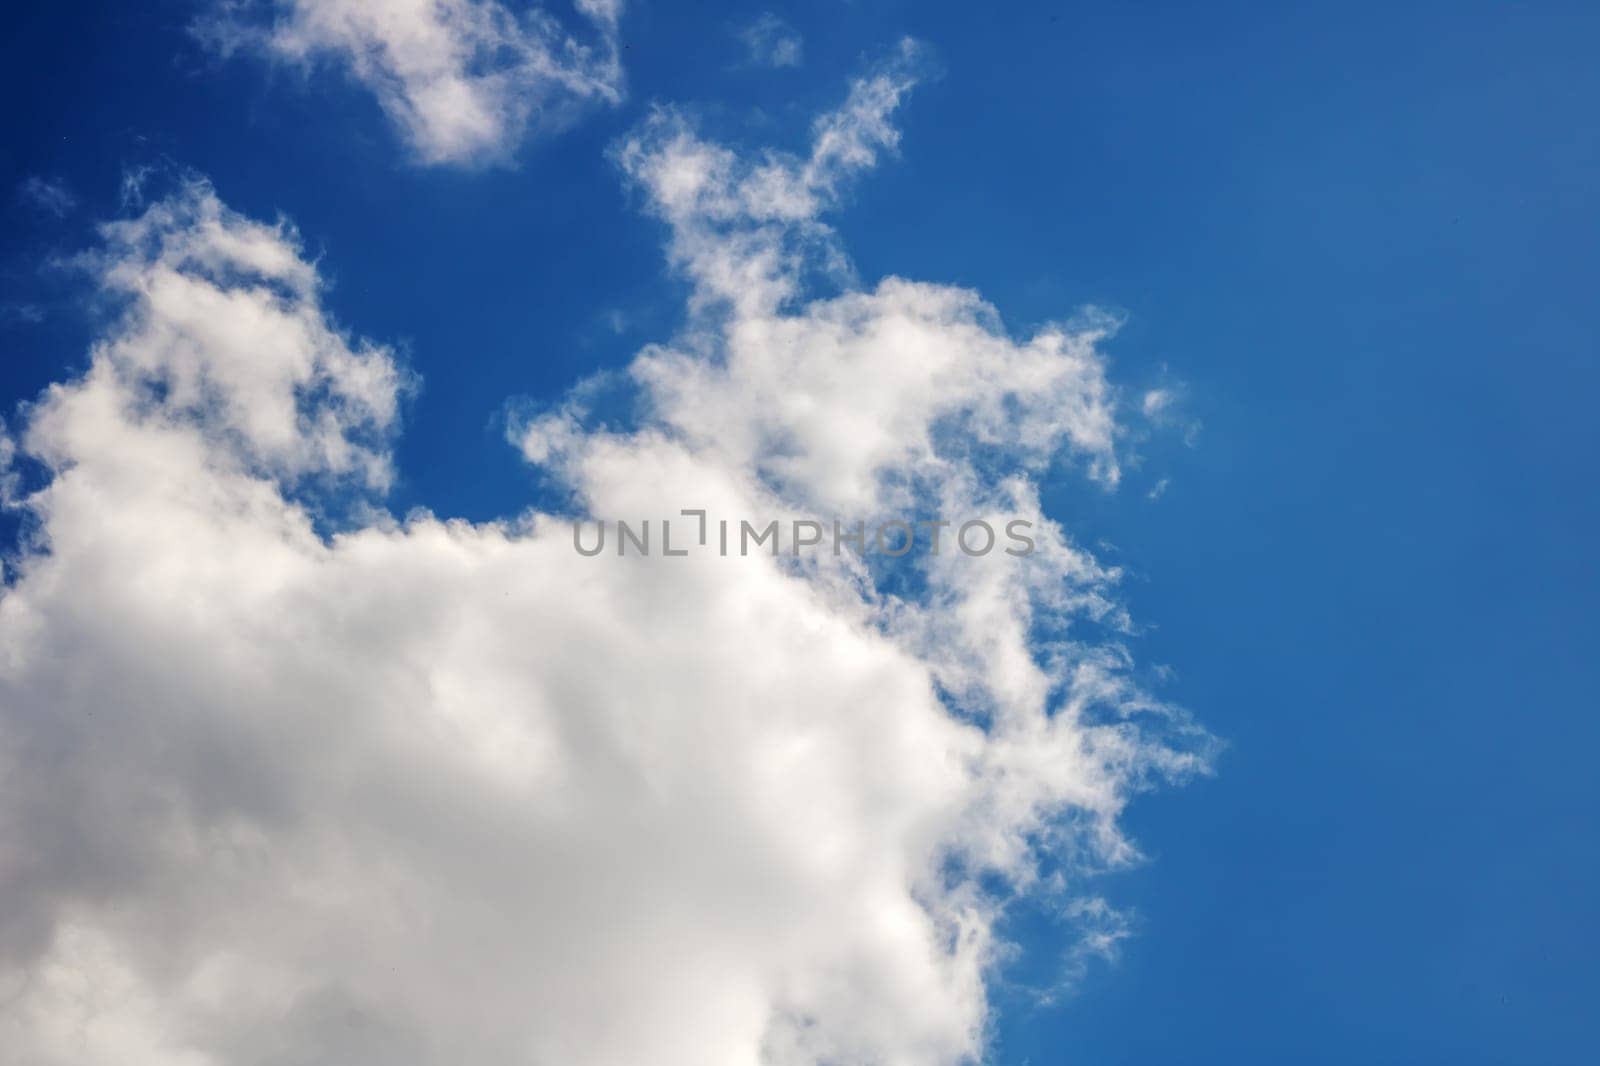 White clouds in a blue bright sky close up